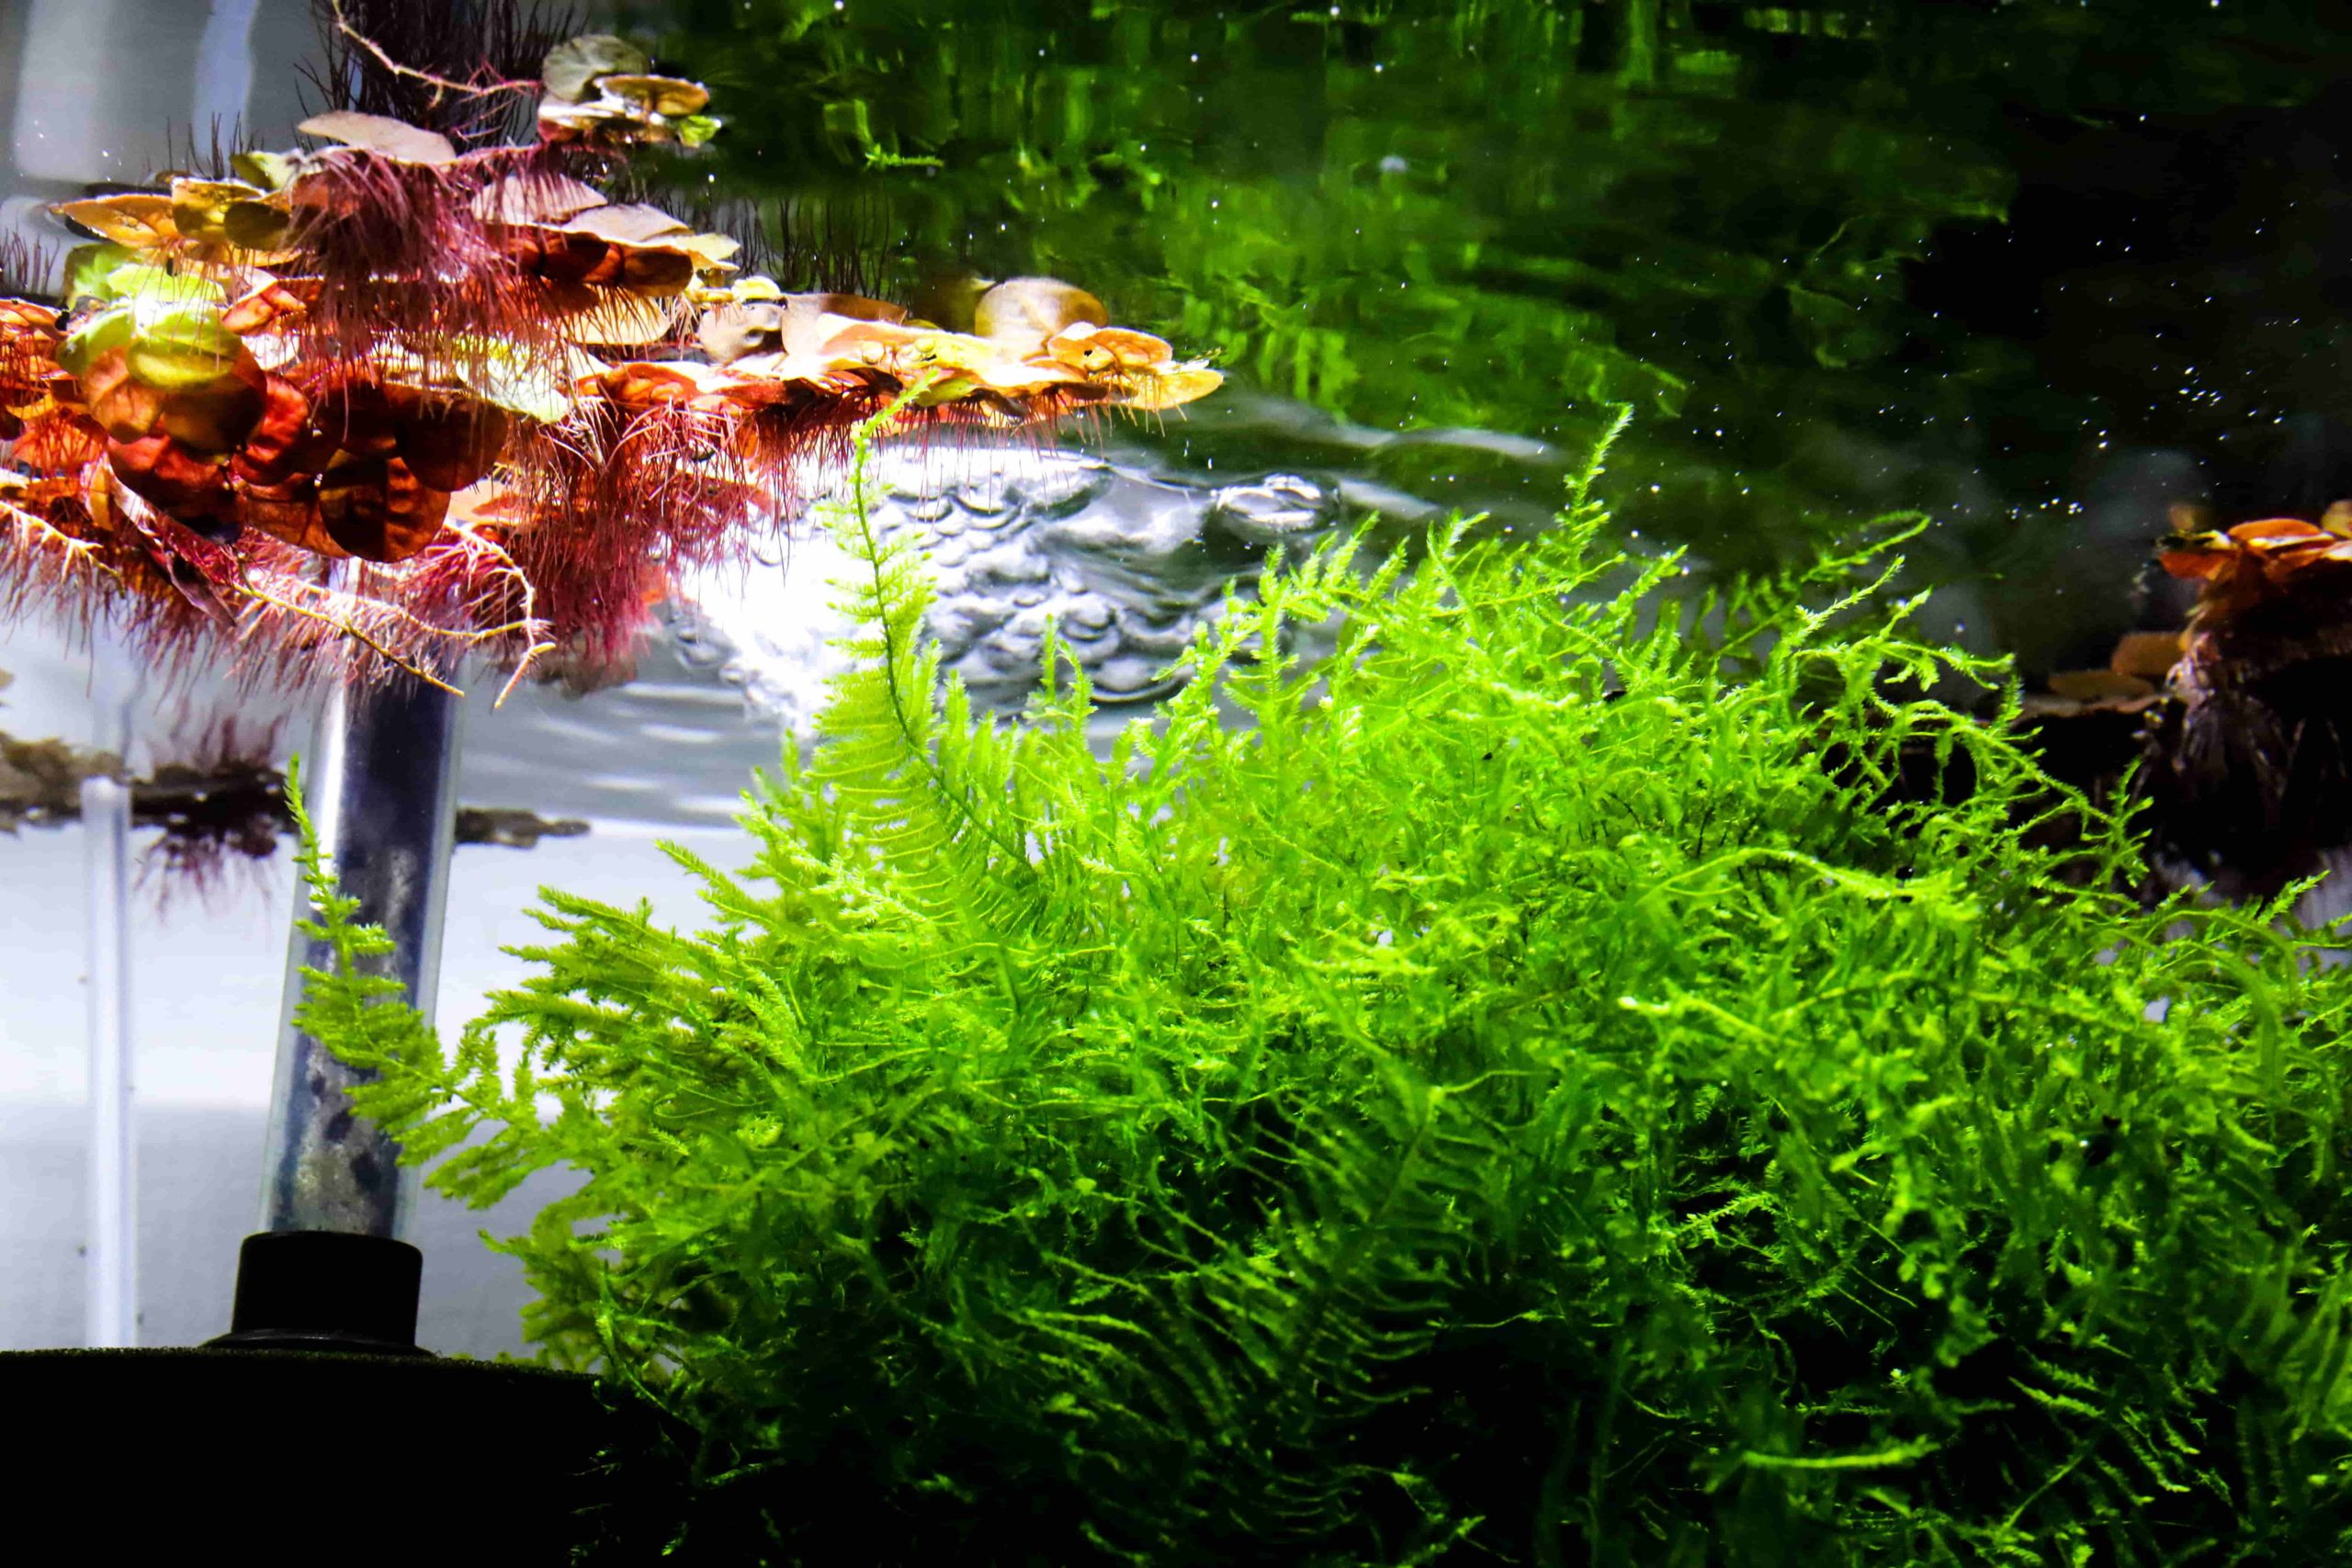 アクアリウム 熱帯魚 甲殻類 水草 に使用する水について解説します Aquariumbreedmanual アクアリウムブリードマニュアル